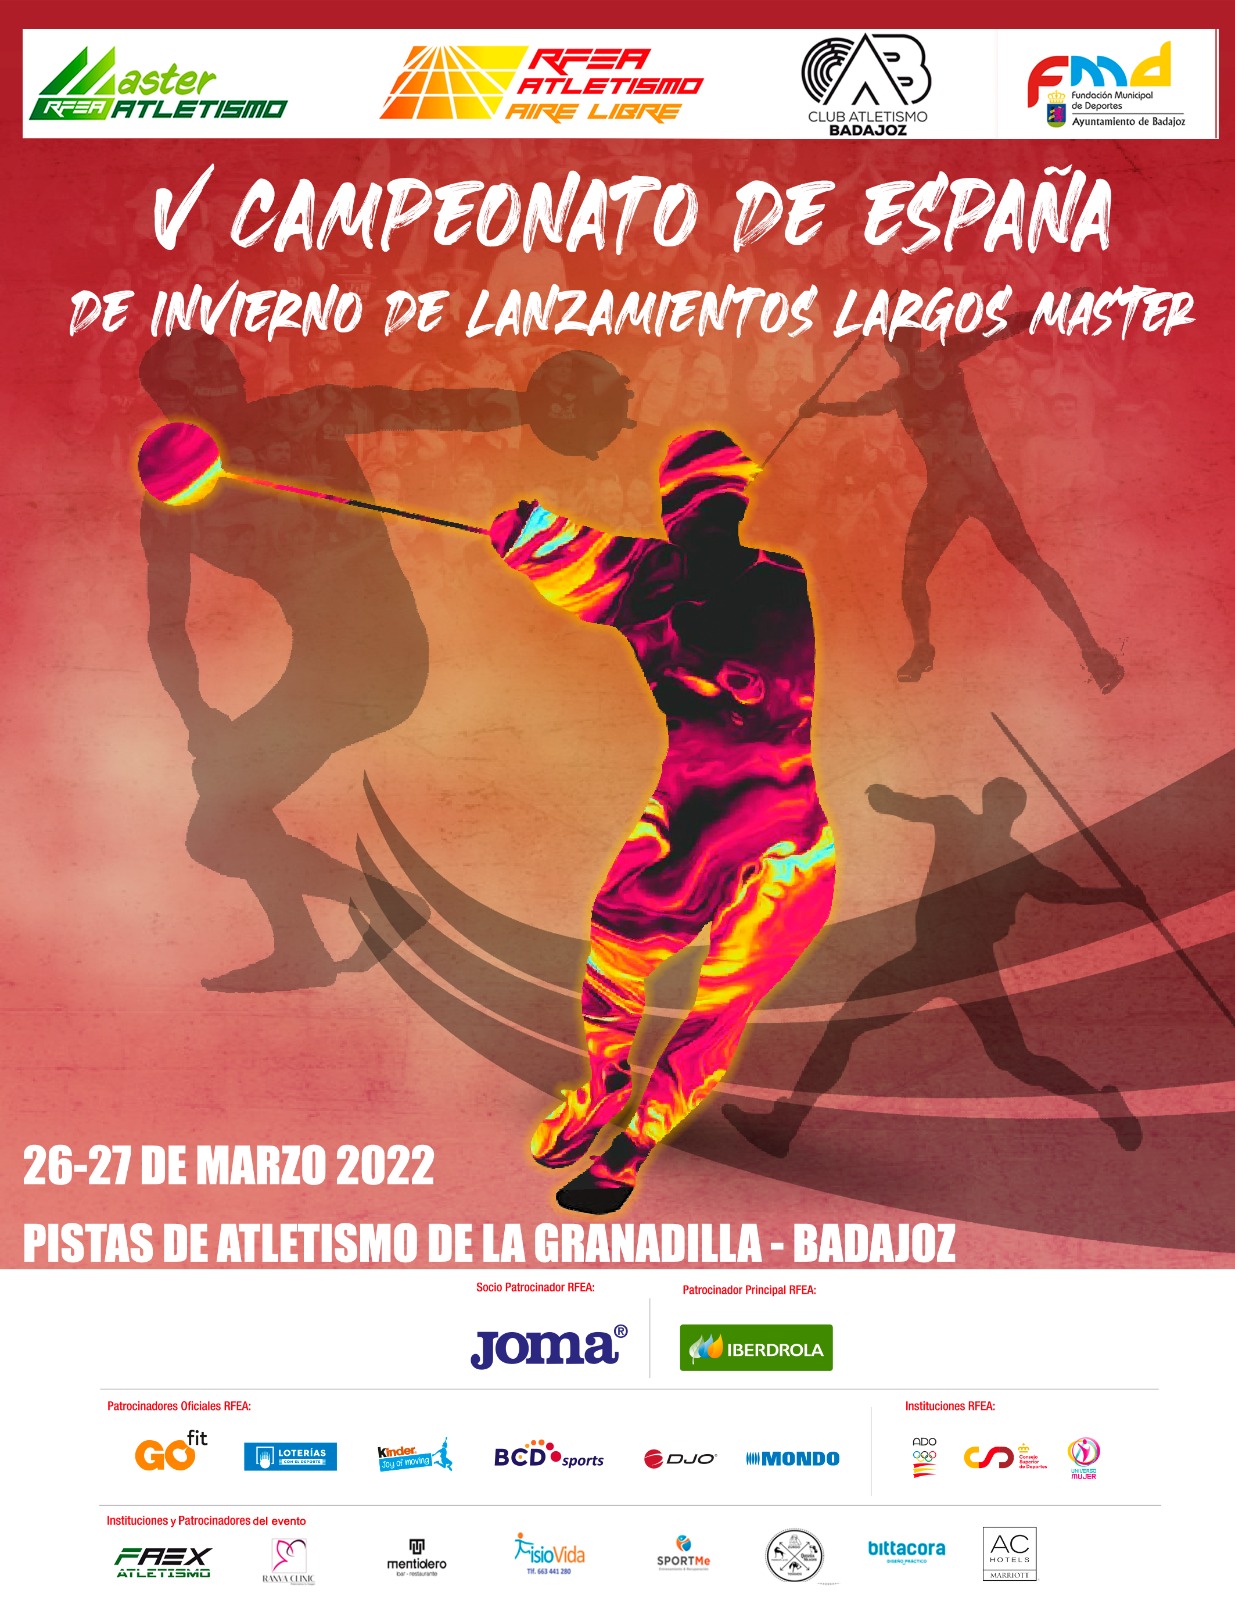 Los isleños Sequera y Palma disputan el Campeonato de España Máster de Lanzamientos Largos